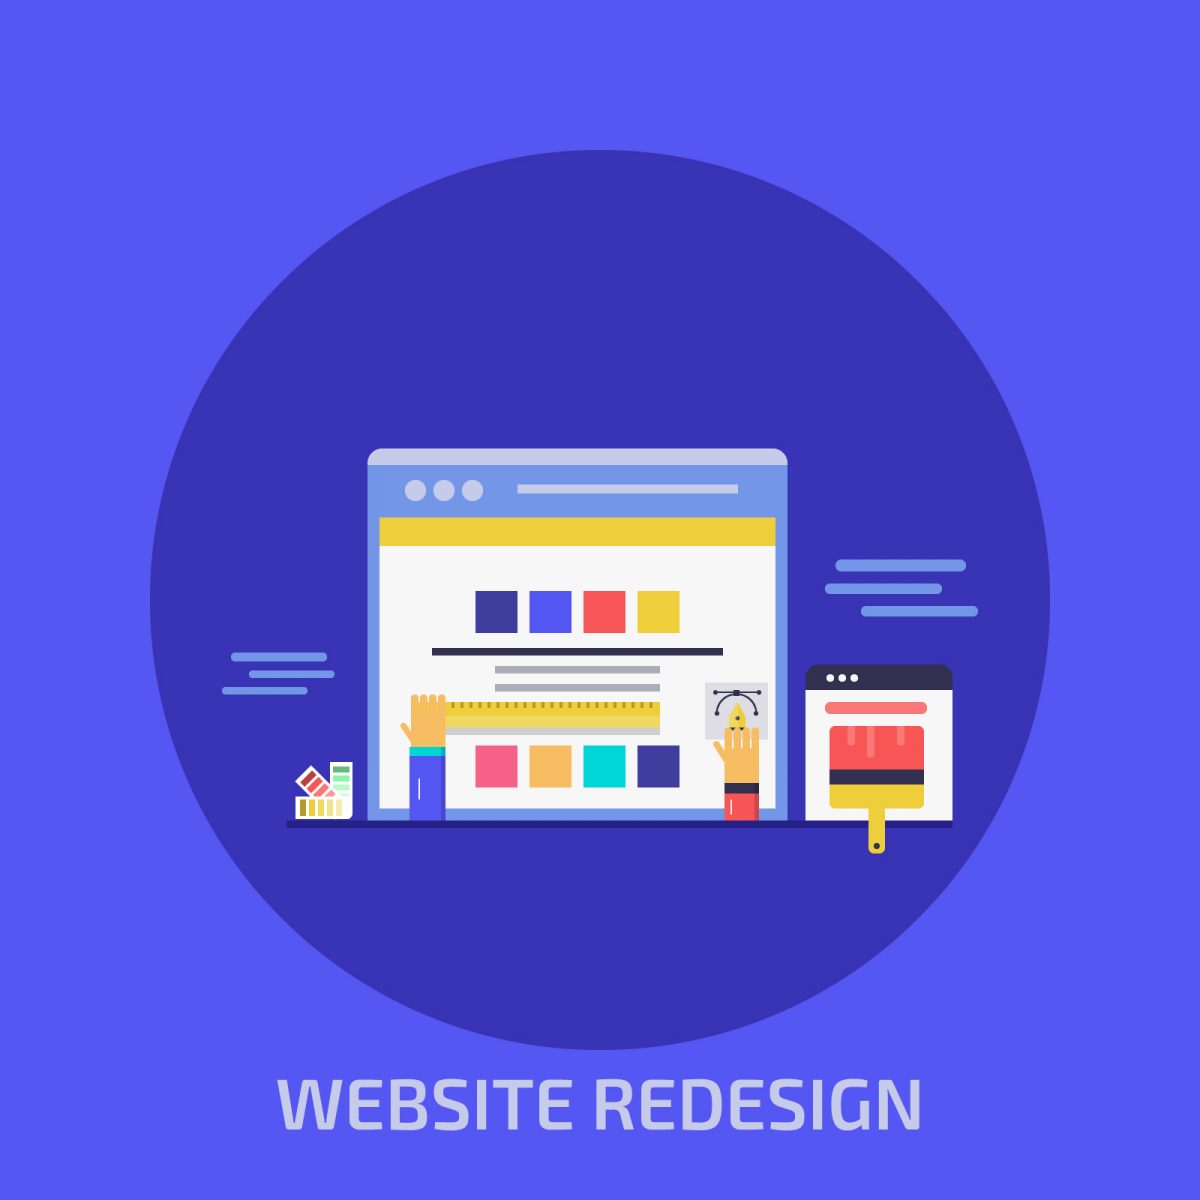 website redesign